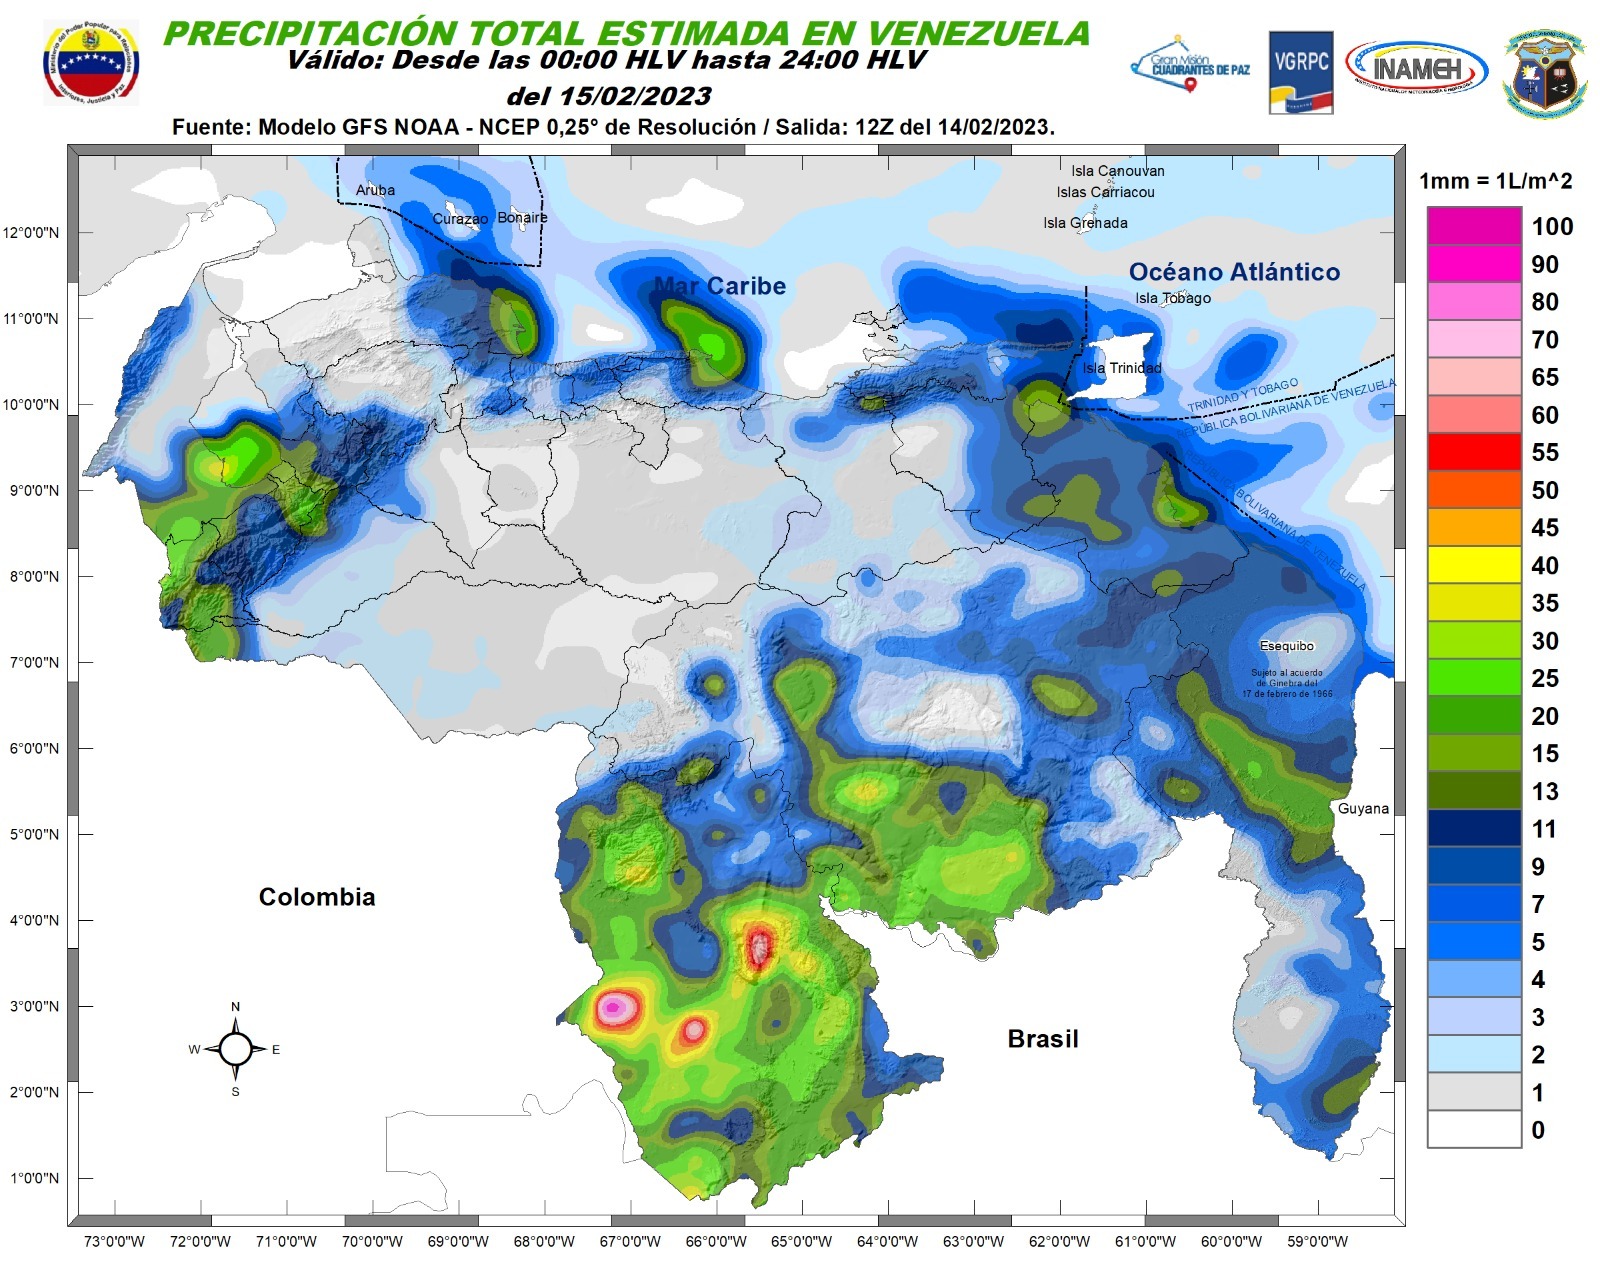 Inameh pronosticó nubosidad en varios estados de Venezuela este #15Feb